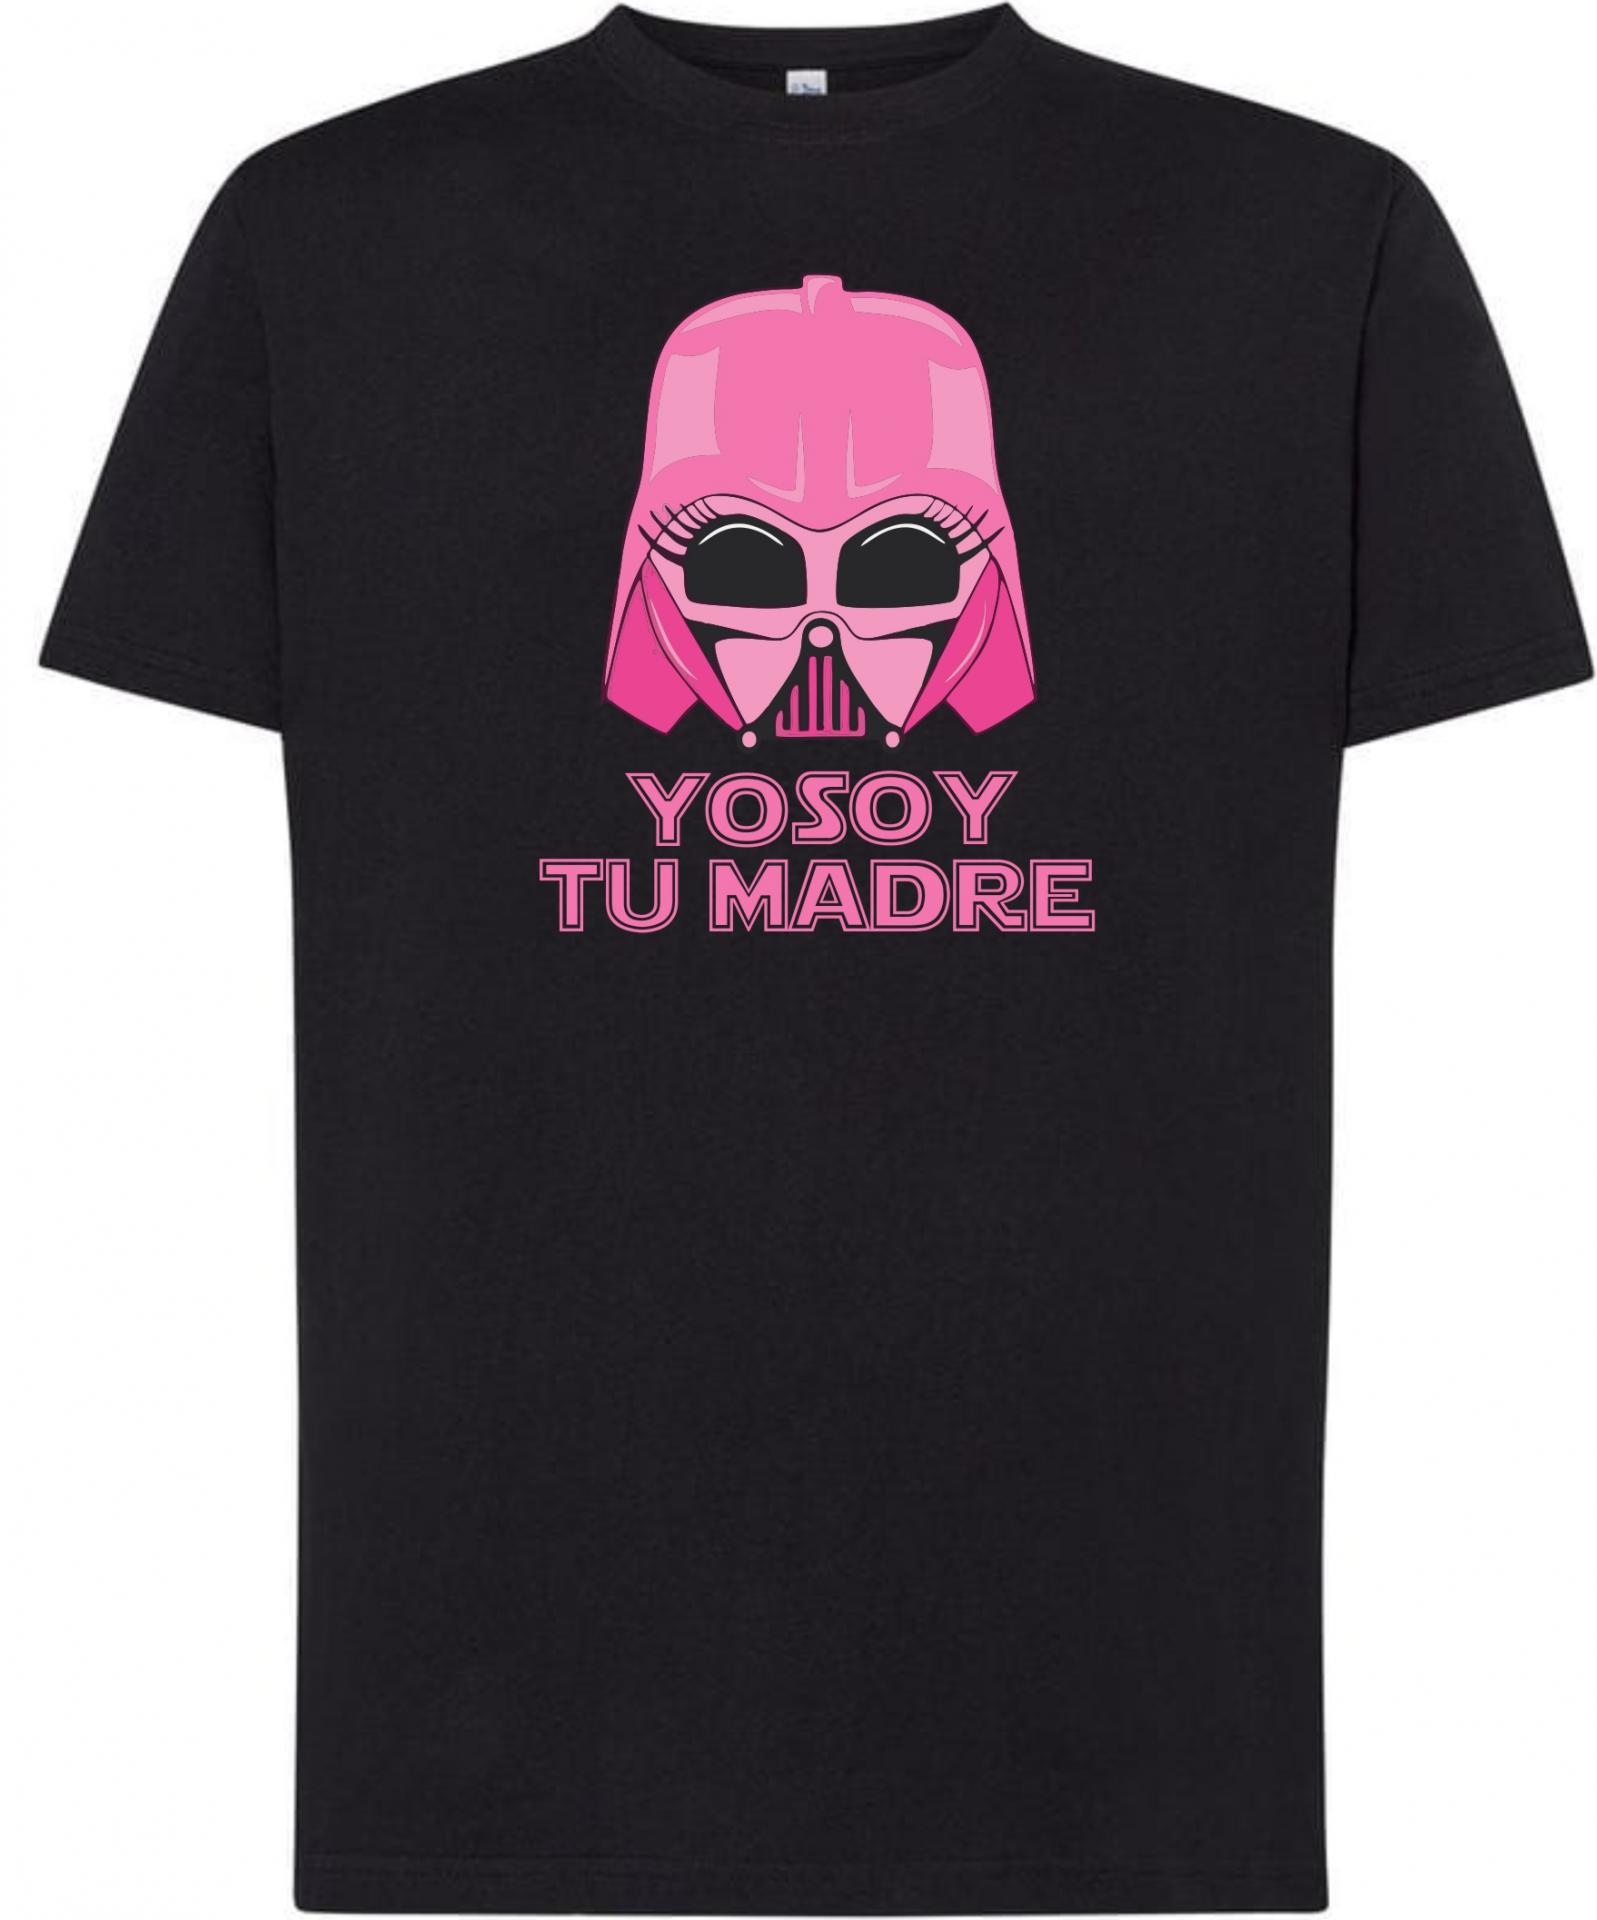 Camiseta Dia de La Madre - Yo Soy Tu Madre